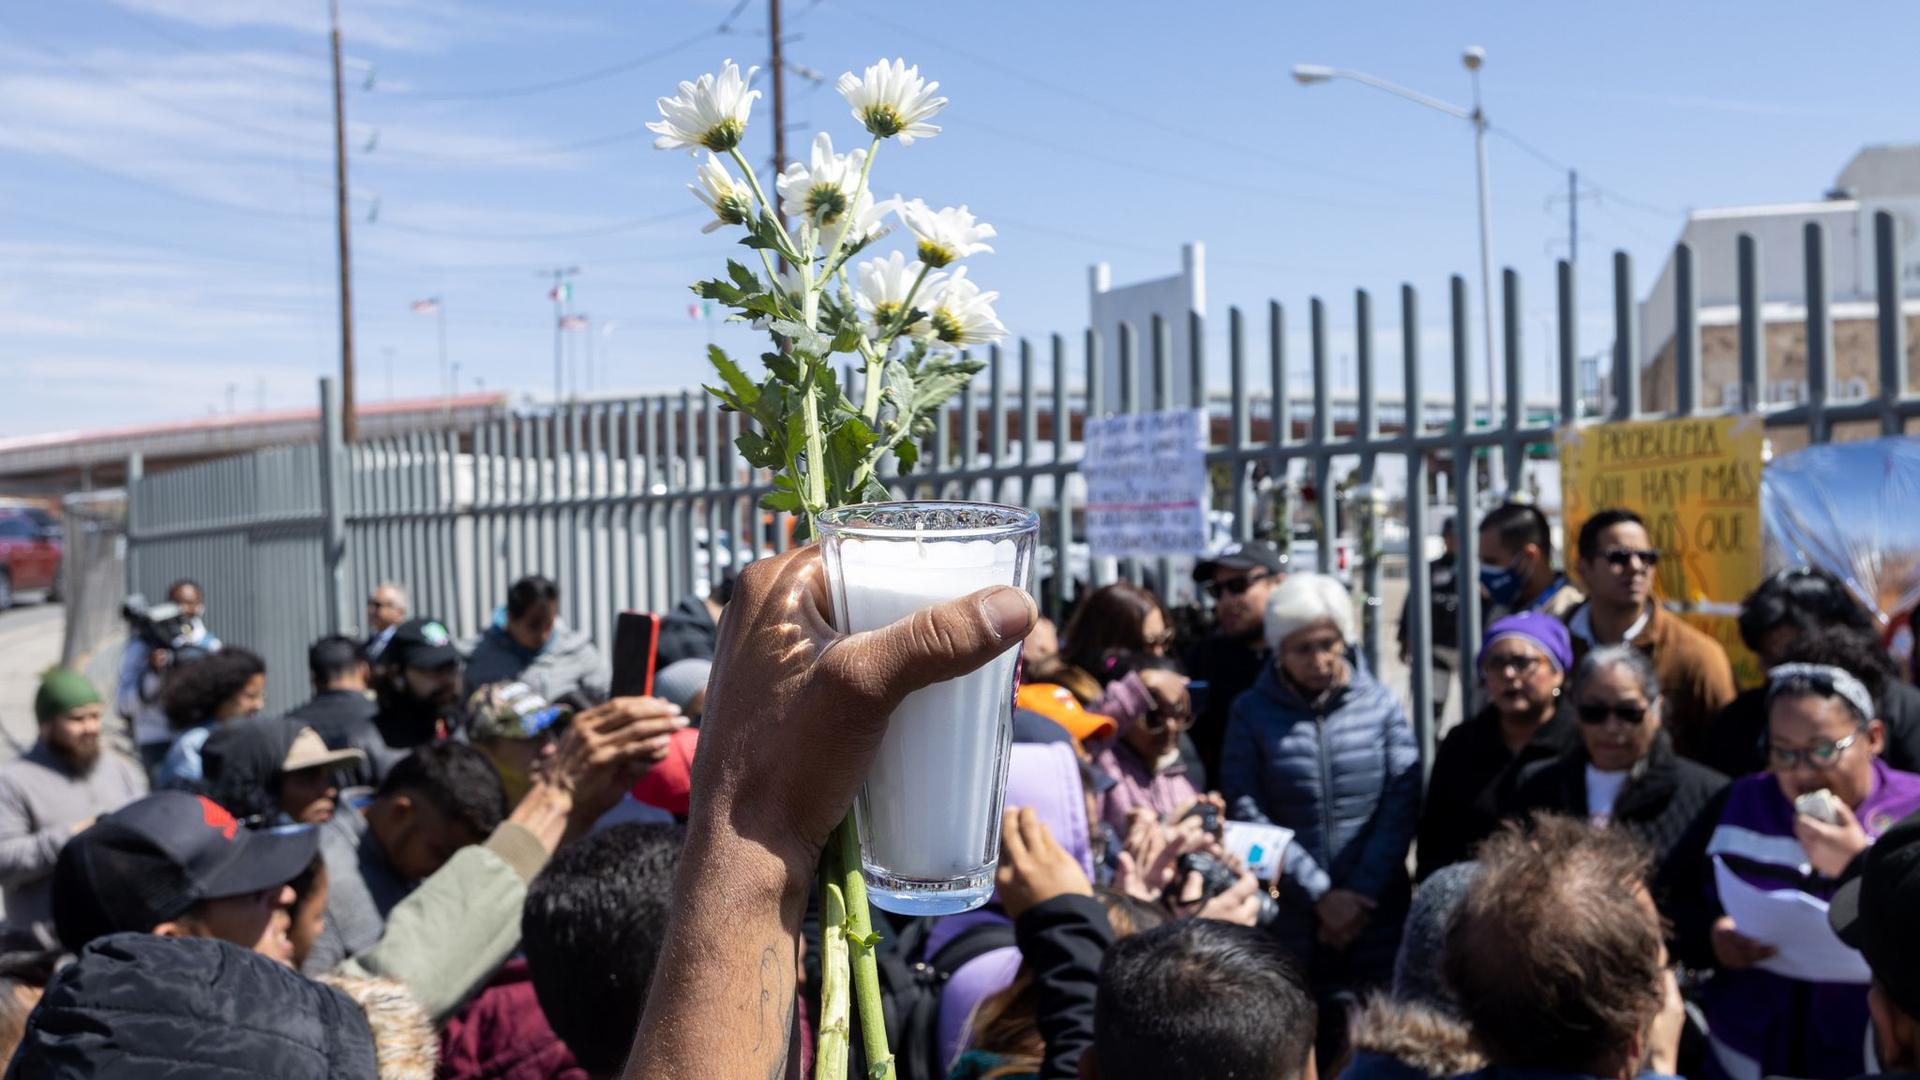 Menschen trauern vor der Sammelstelle für festgenommene Migranten in Ciudad Juárez, wo bei einem Brand mehrere Menschen ums Leben gekommen waren.